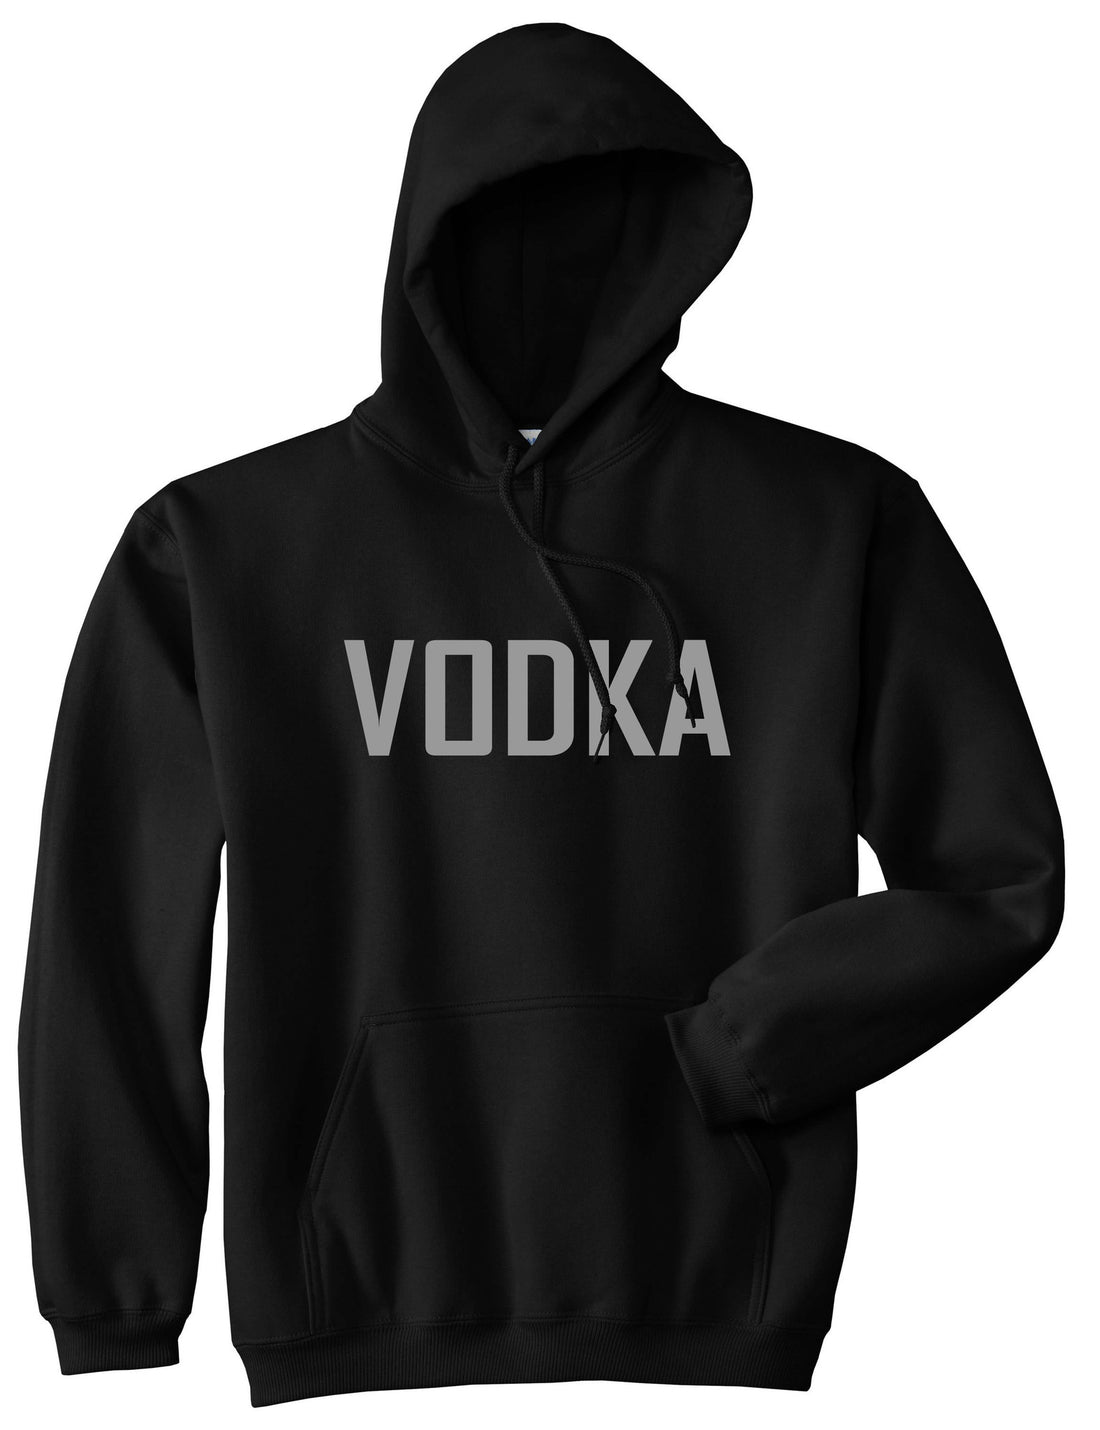 Vodka Pullover Hoodie Hoody by Kings Of NY